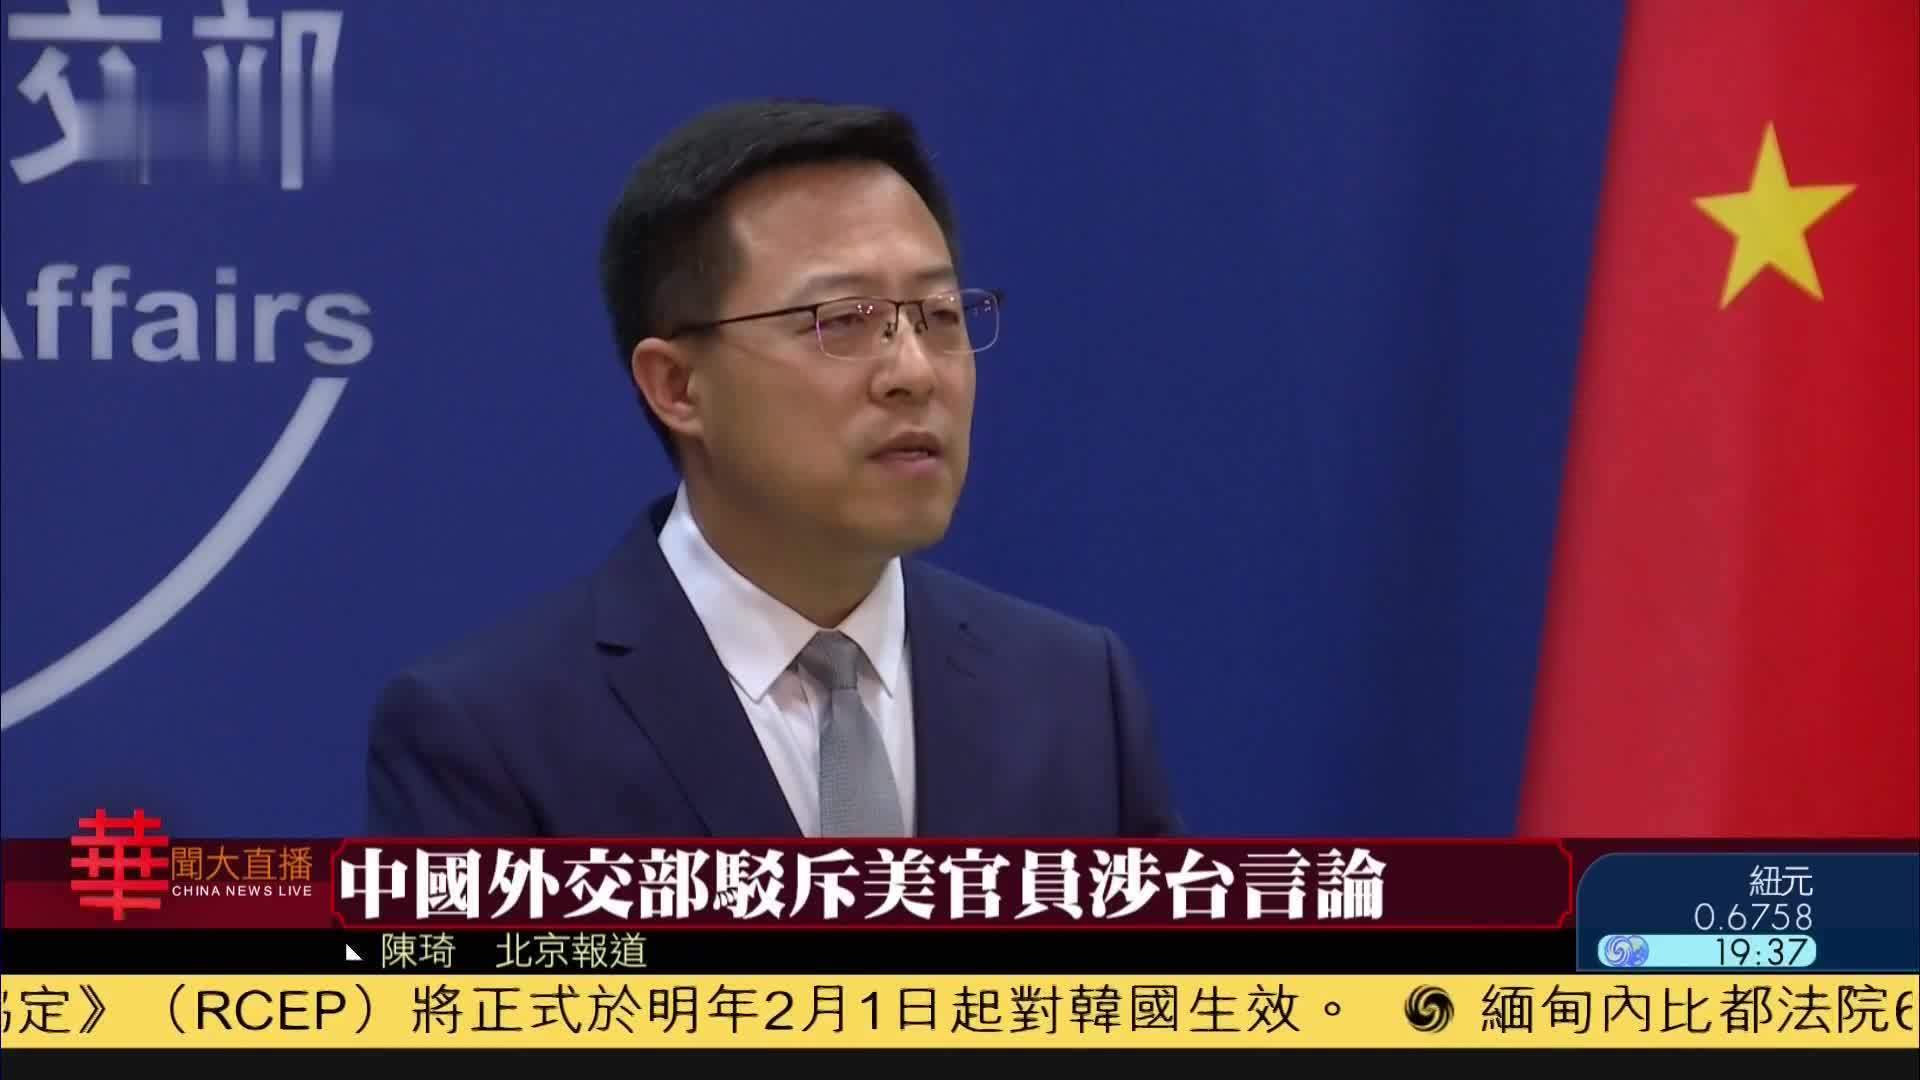 中国外交部驳斥美官员涉台言论